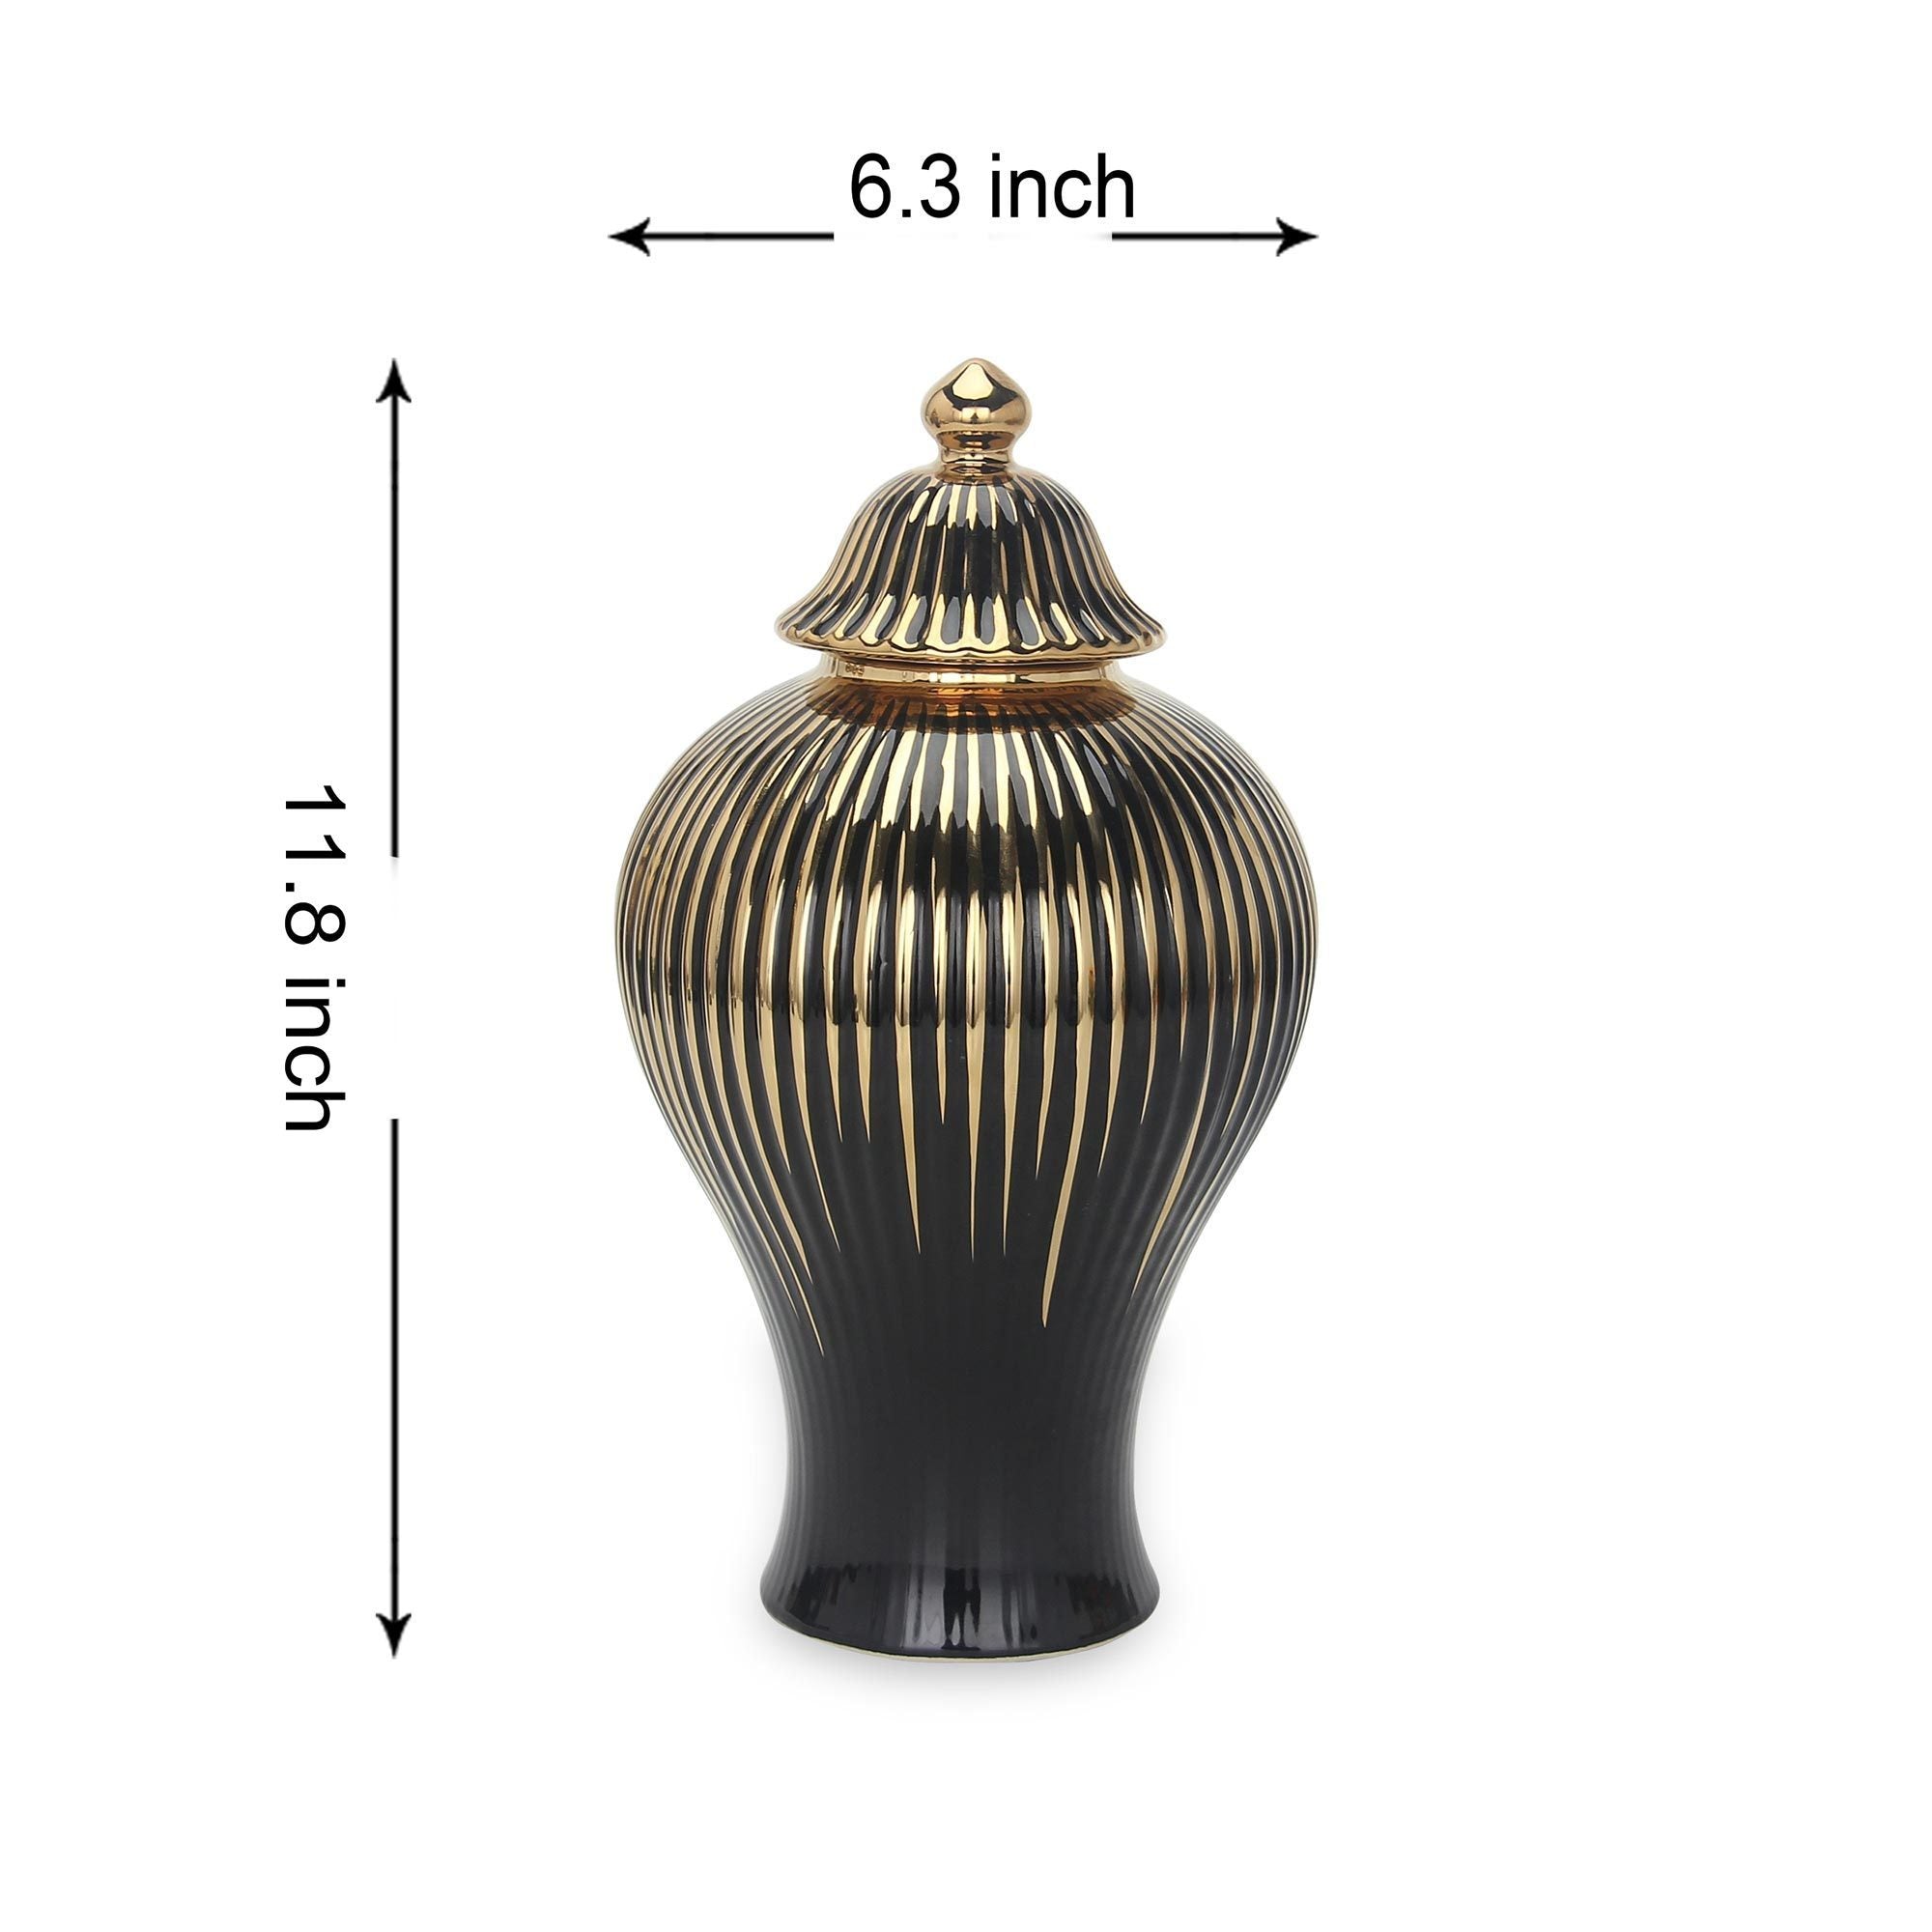 Black with Gold Design Ceramic Decorative Ginger Jar Vase